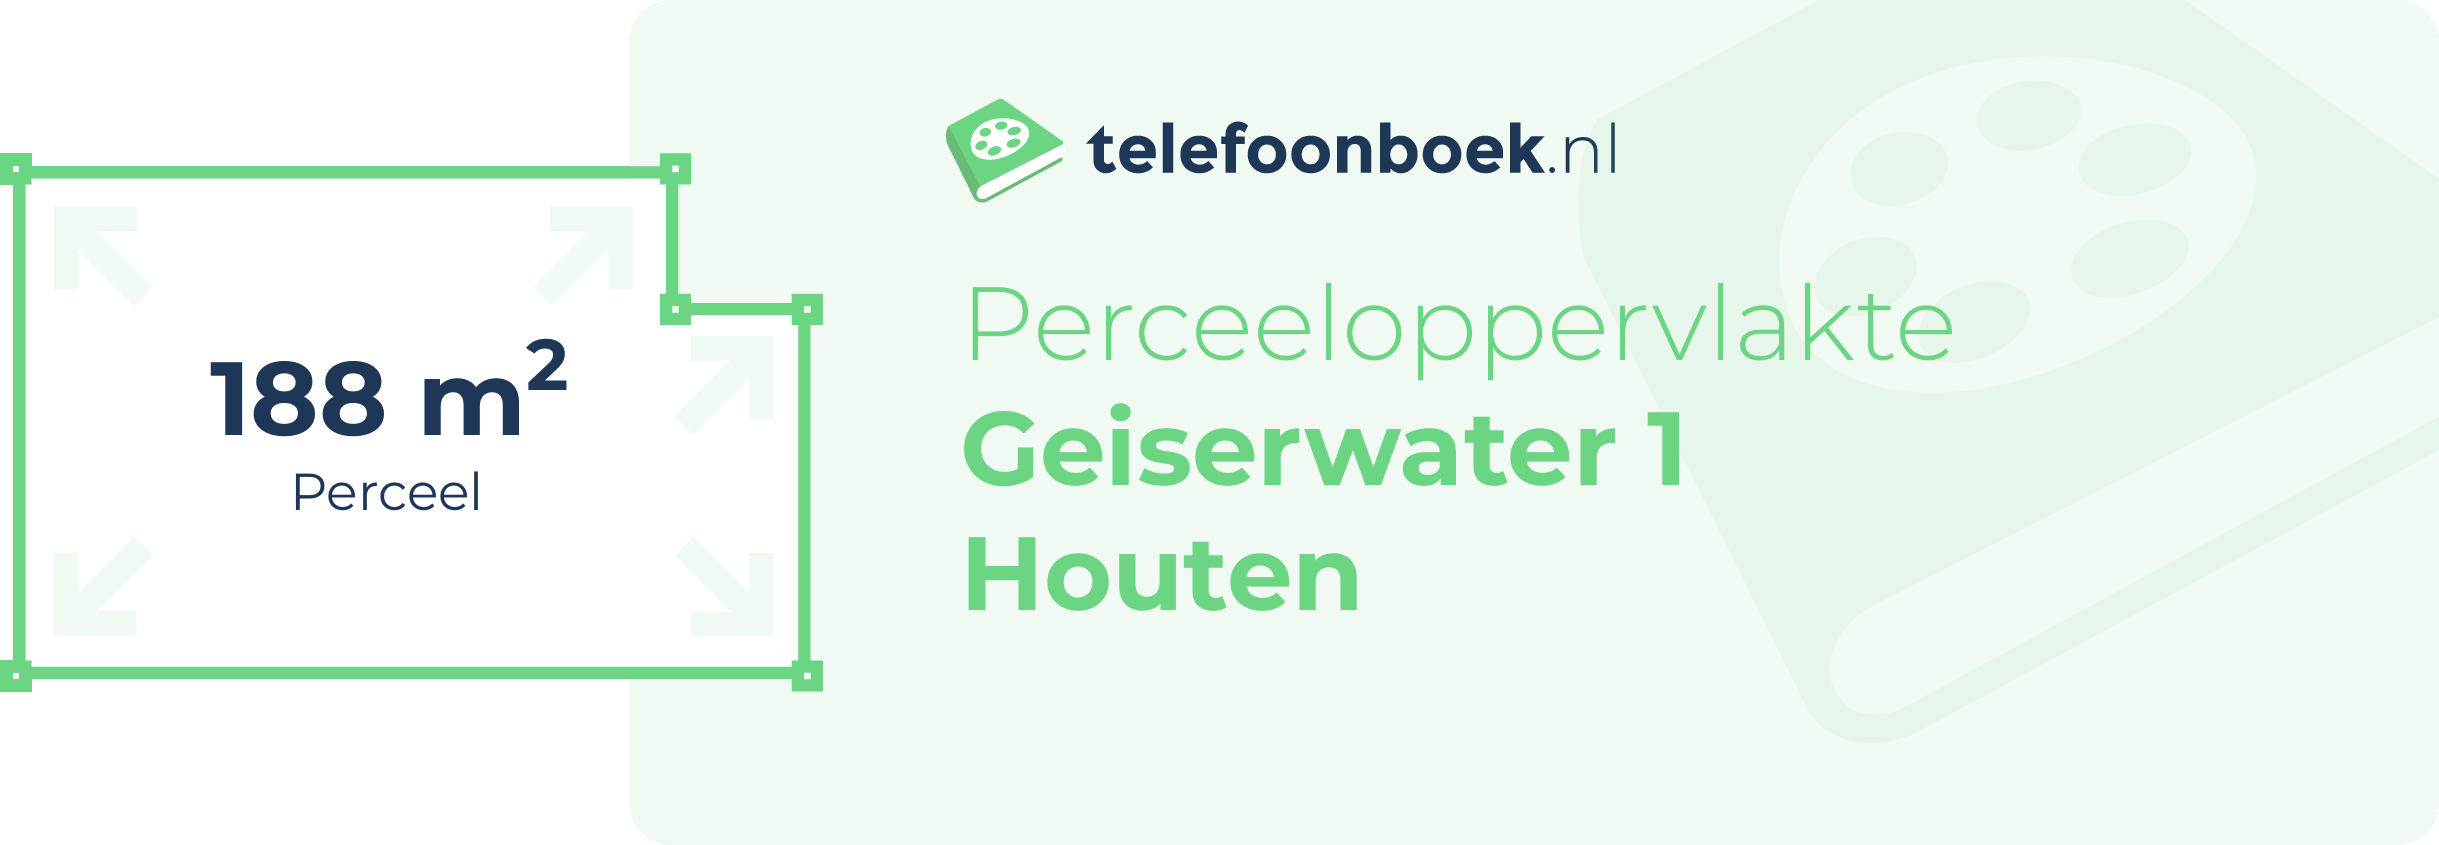 Perceeloppervlakte Geiserwater 1 Houten